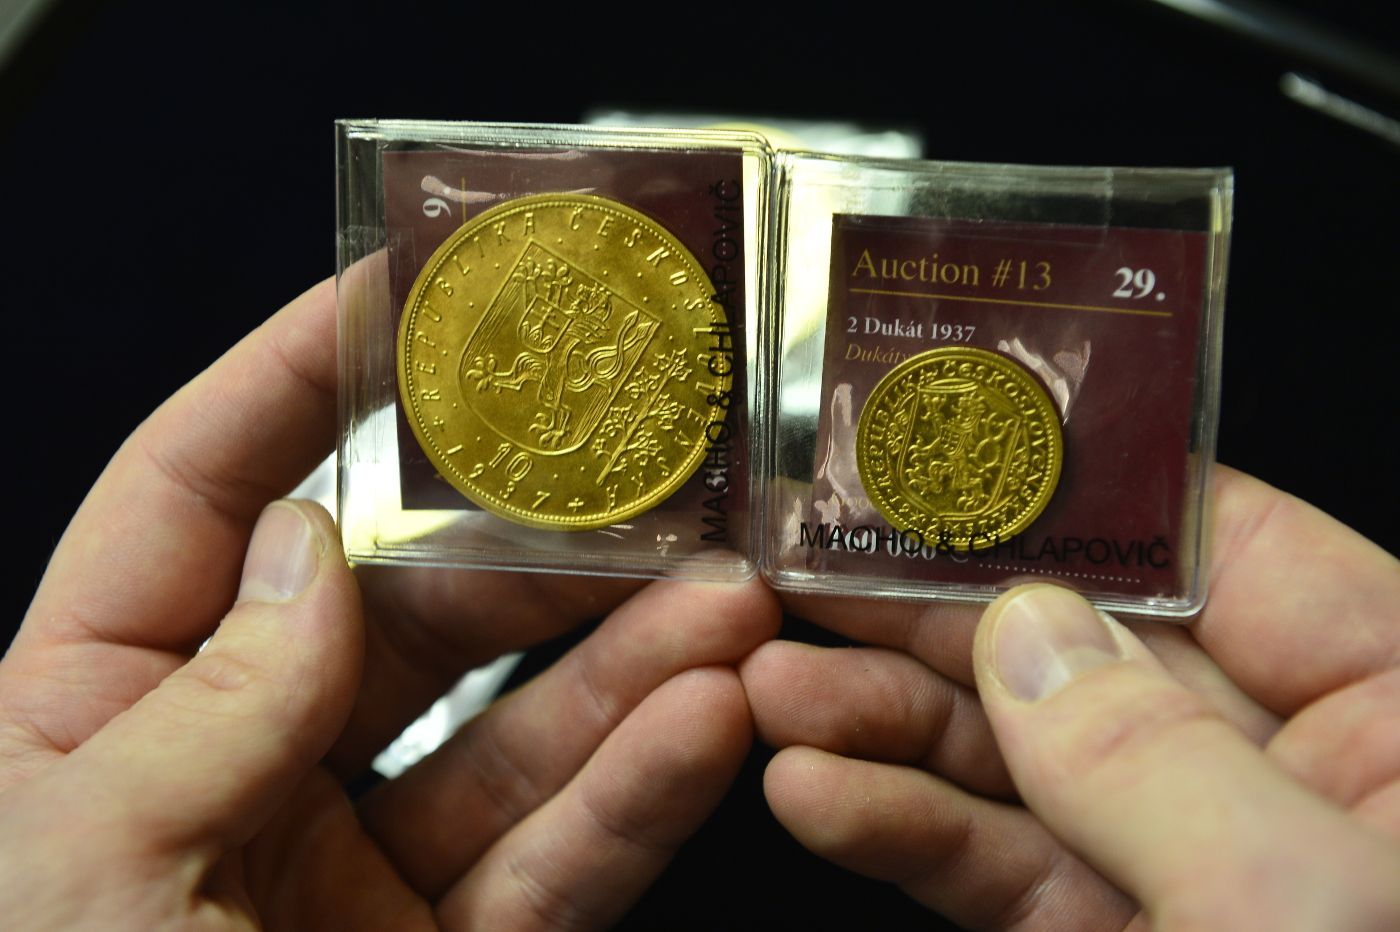 Druhá nejdražší mince Česka - dvoudukát z roku 1937